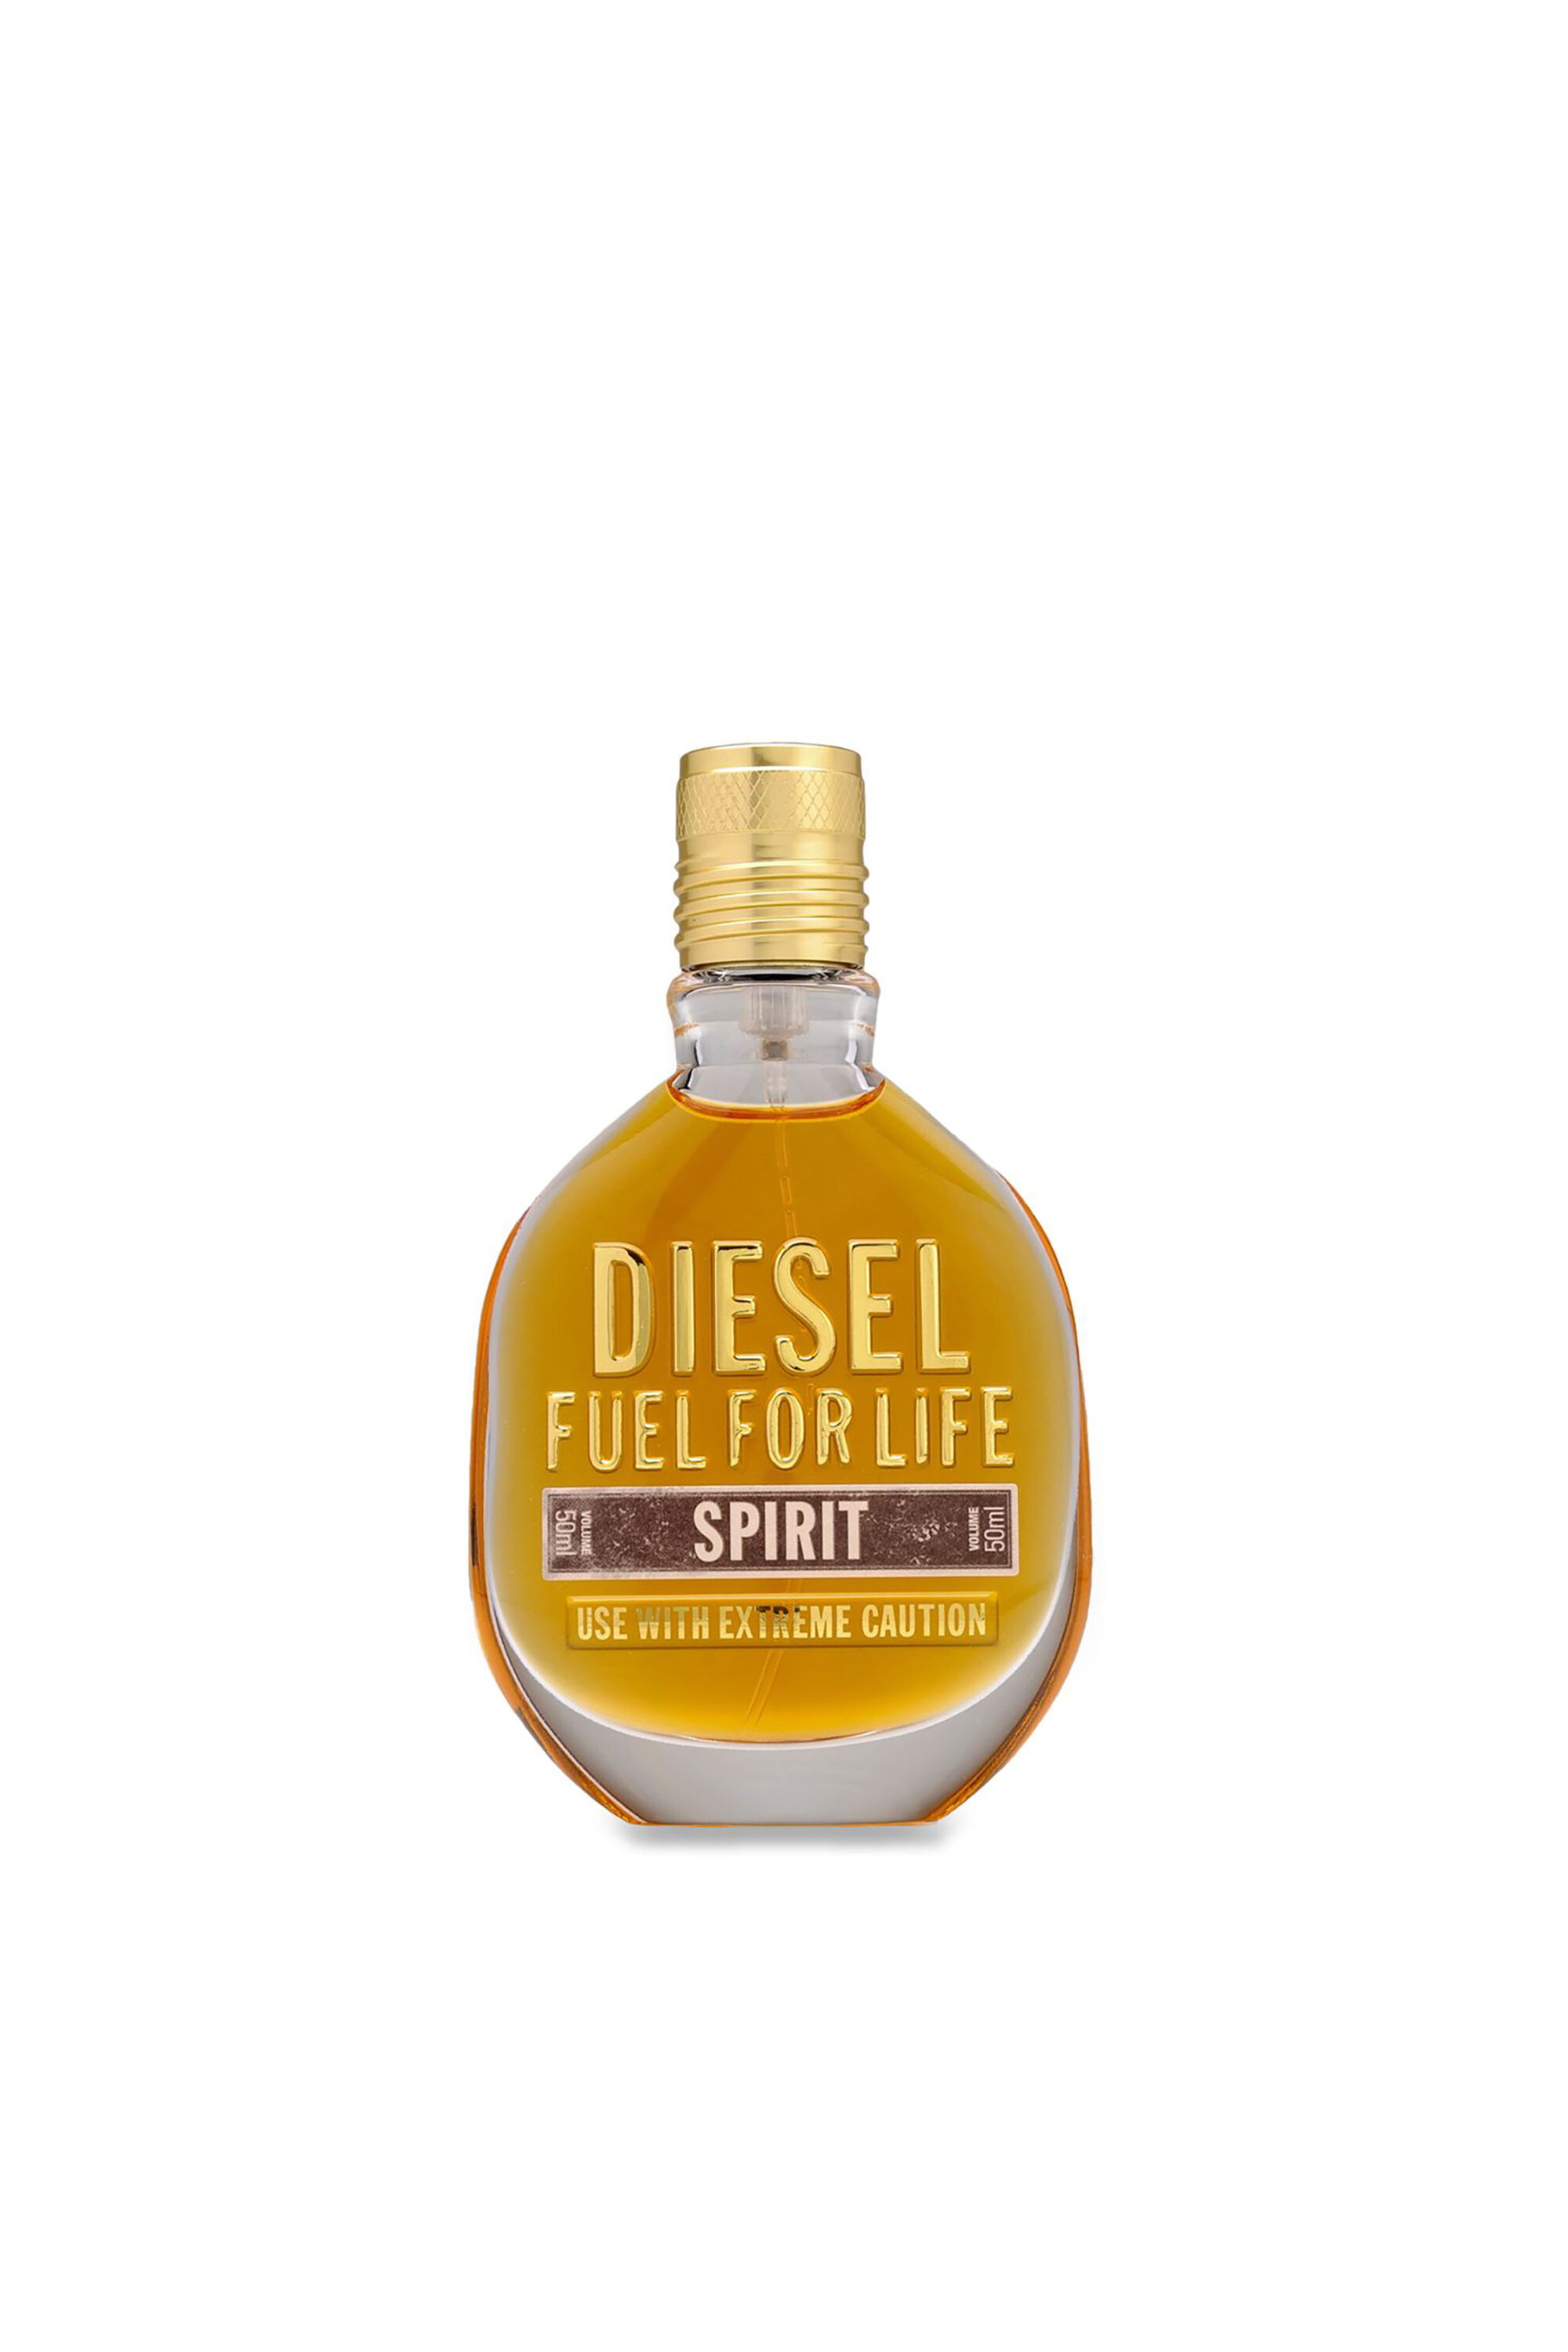 Diesel - FUEL FOR LIFE SPIRIT 50ML, Generisch - Image 2